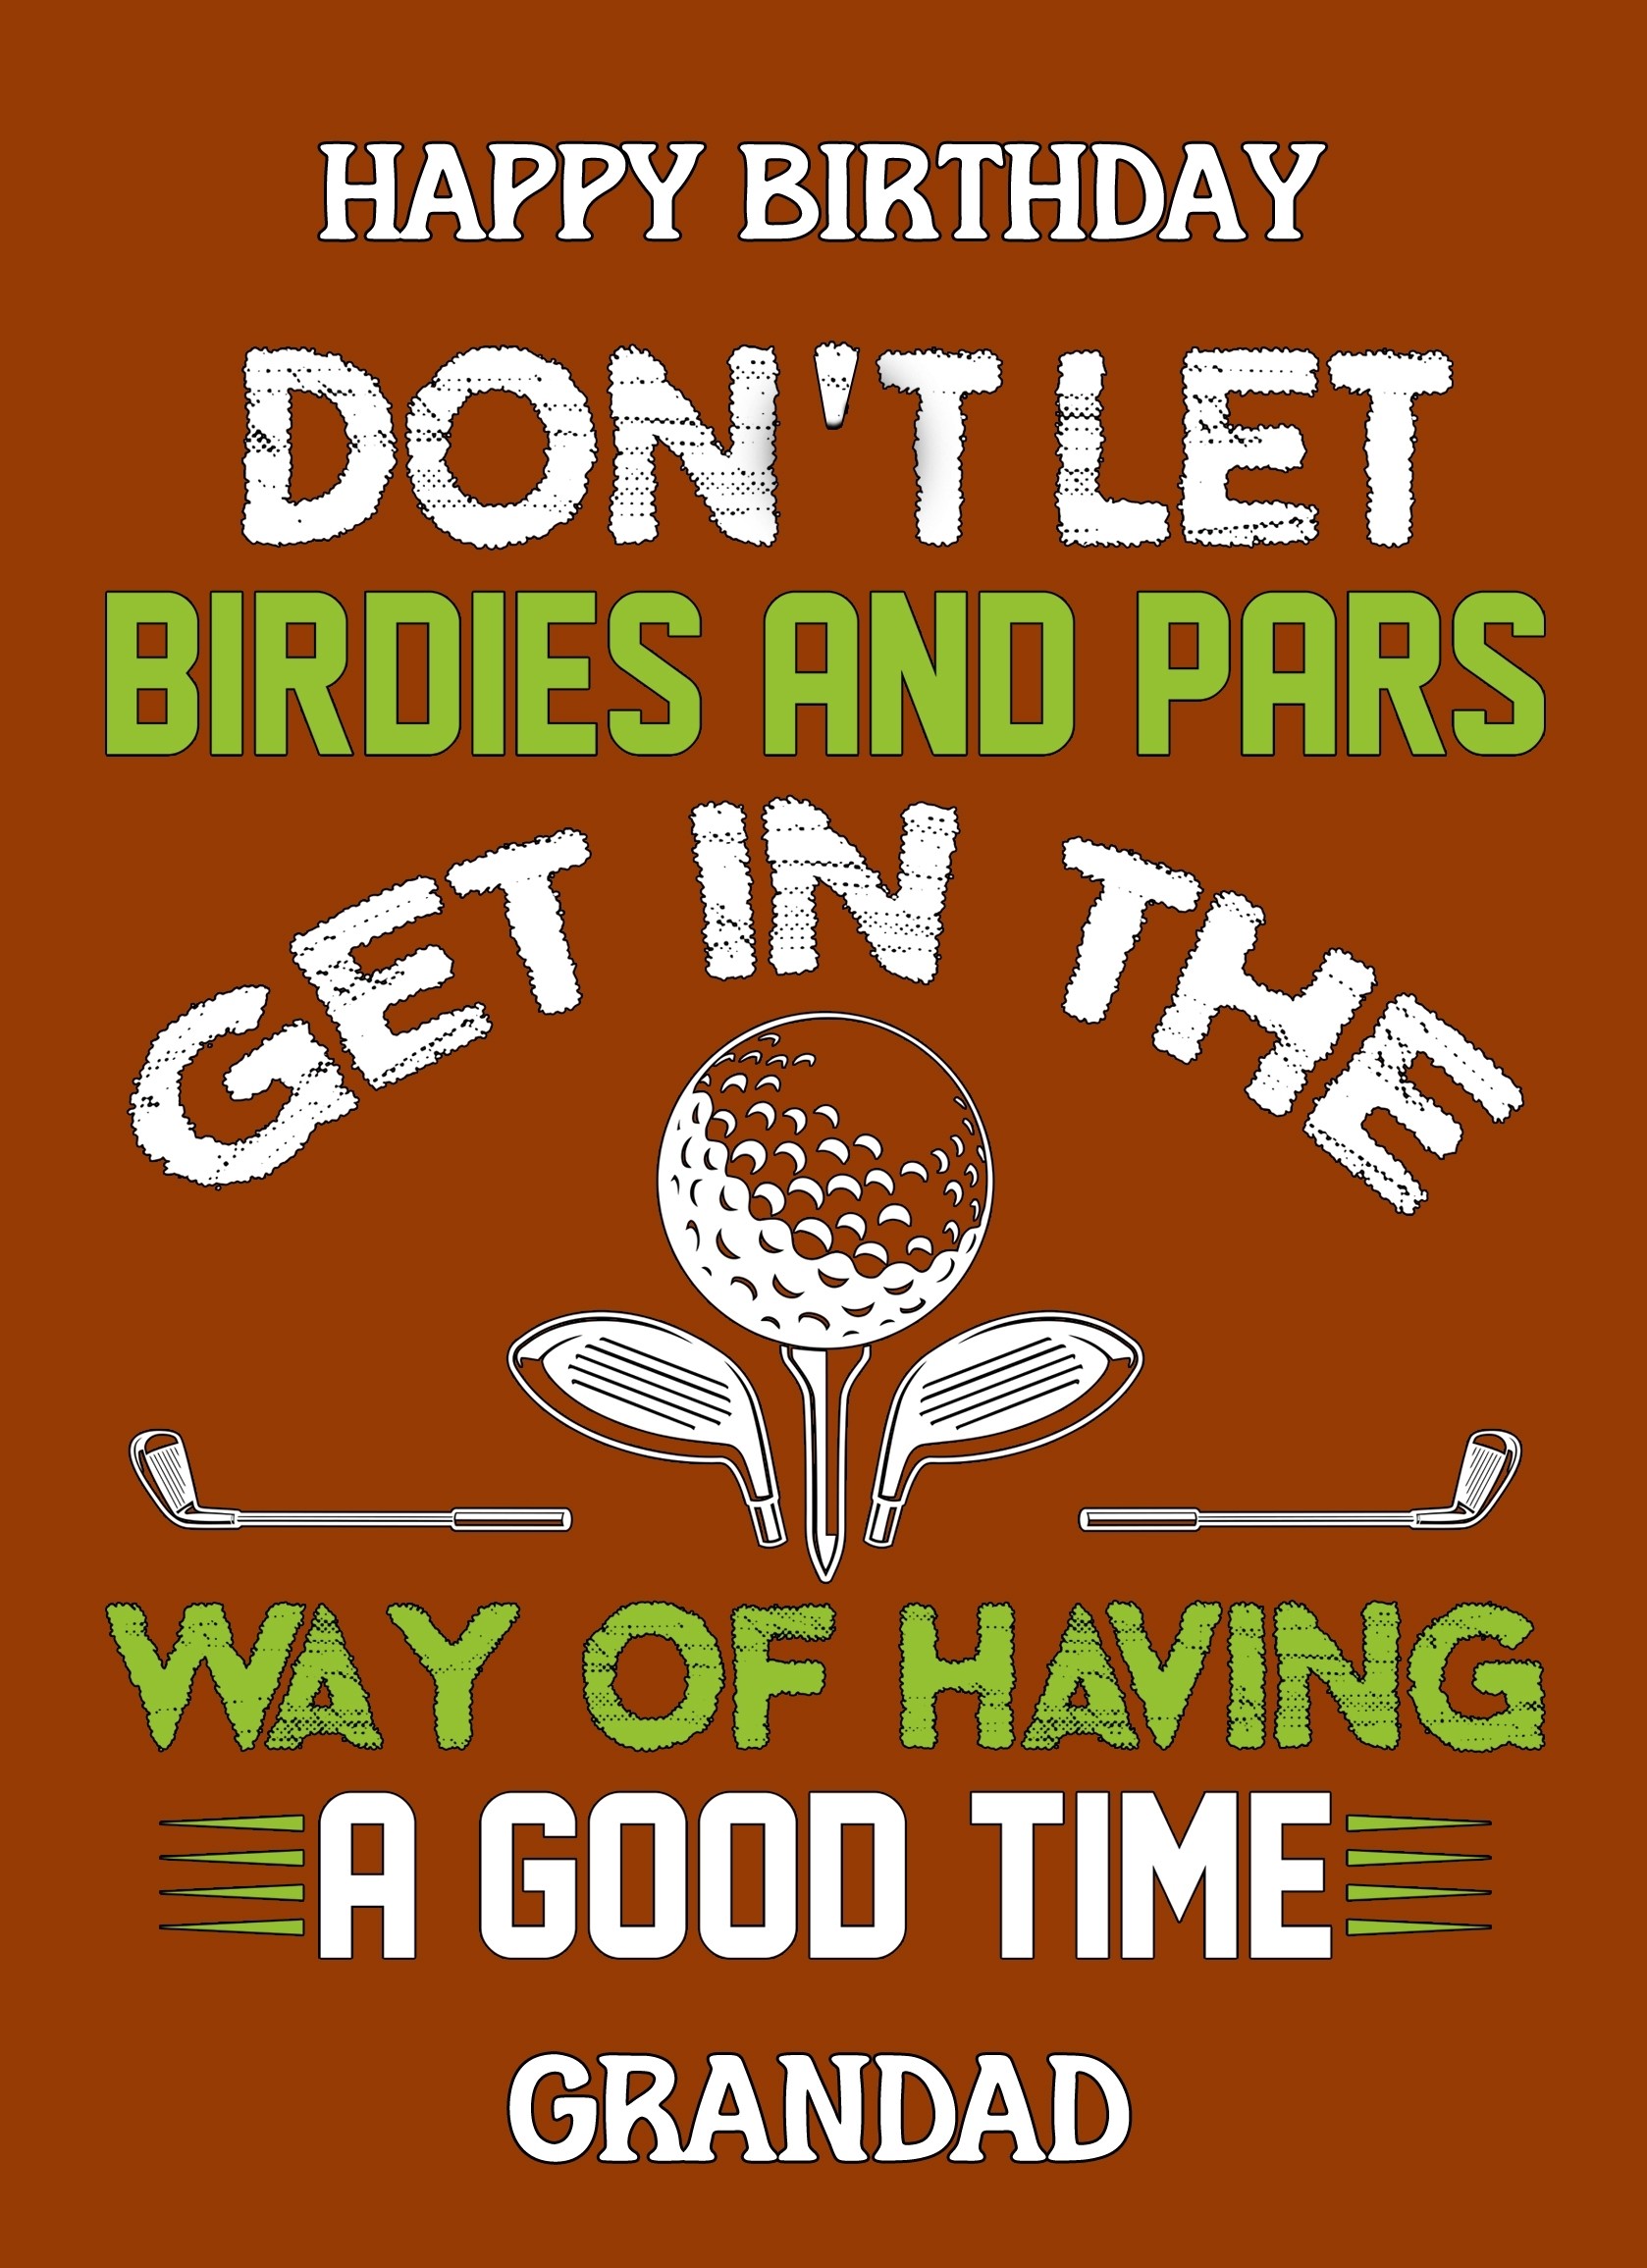 Funny Golf Birthday Card for Grandad (Design 3)